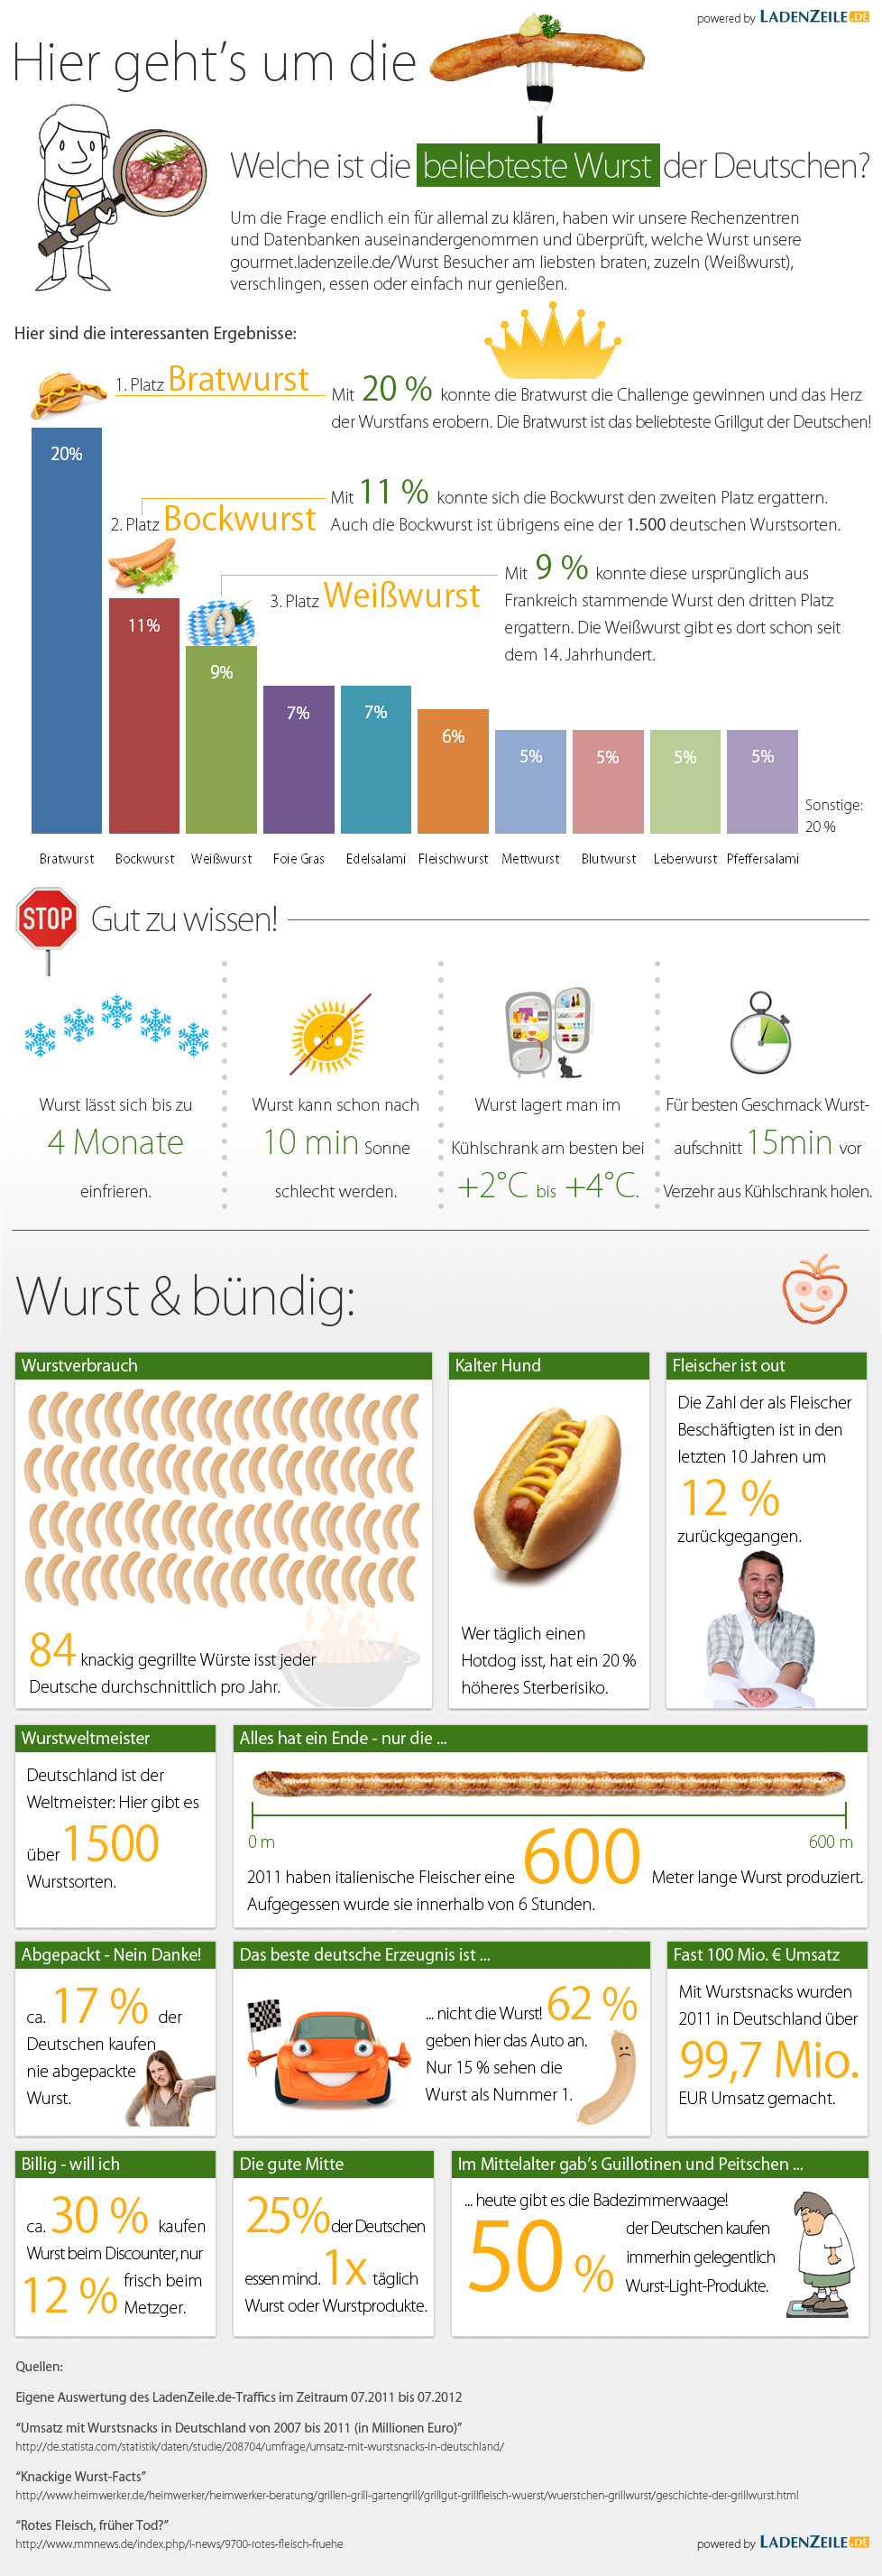 Wurst Infografik 2012 von LadenZeile.de